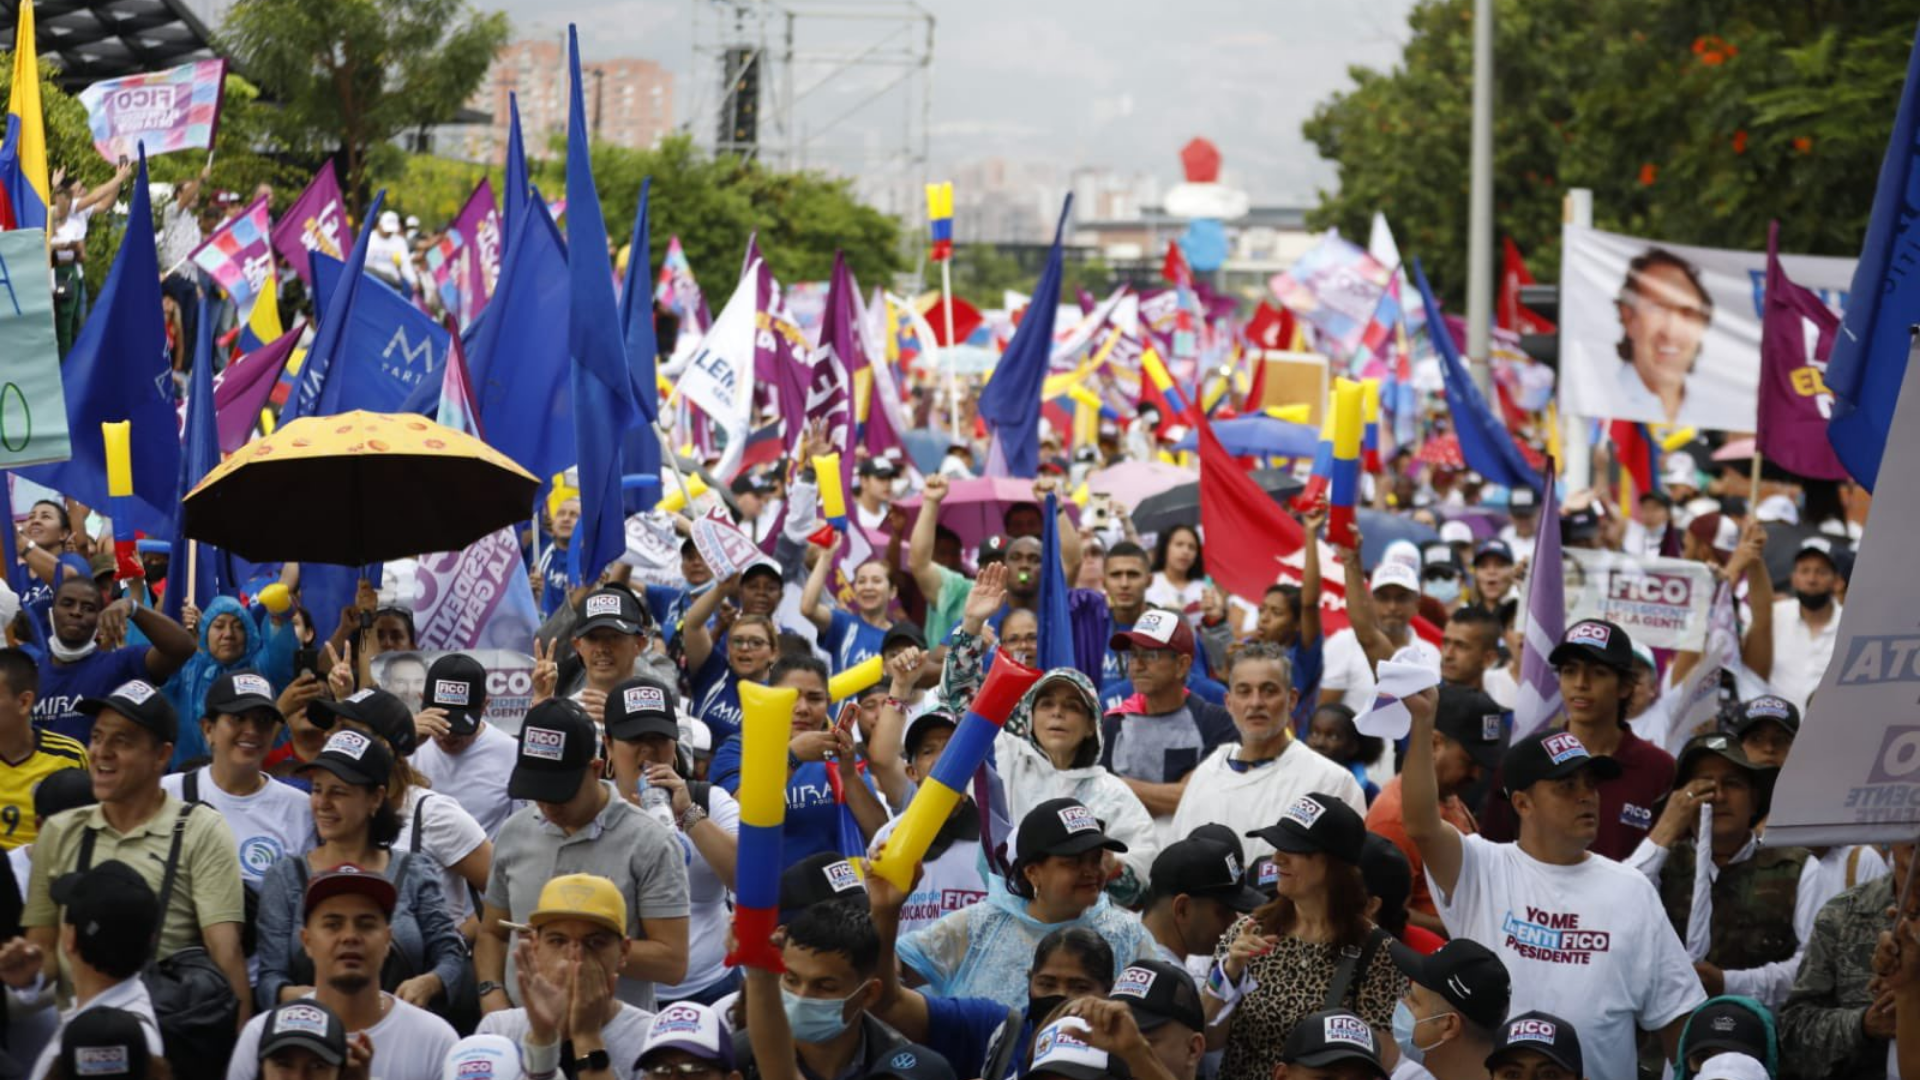 Multitudinario apoyo a Federico Gutiérrez en Medellín.
Foto: Twitter @FicoGutierrez